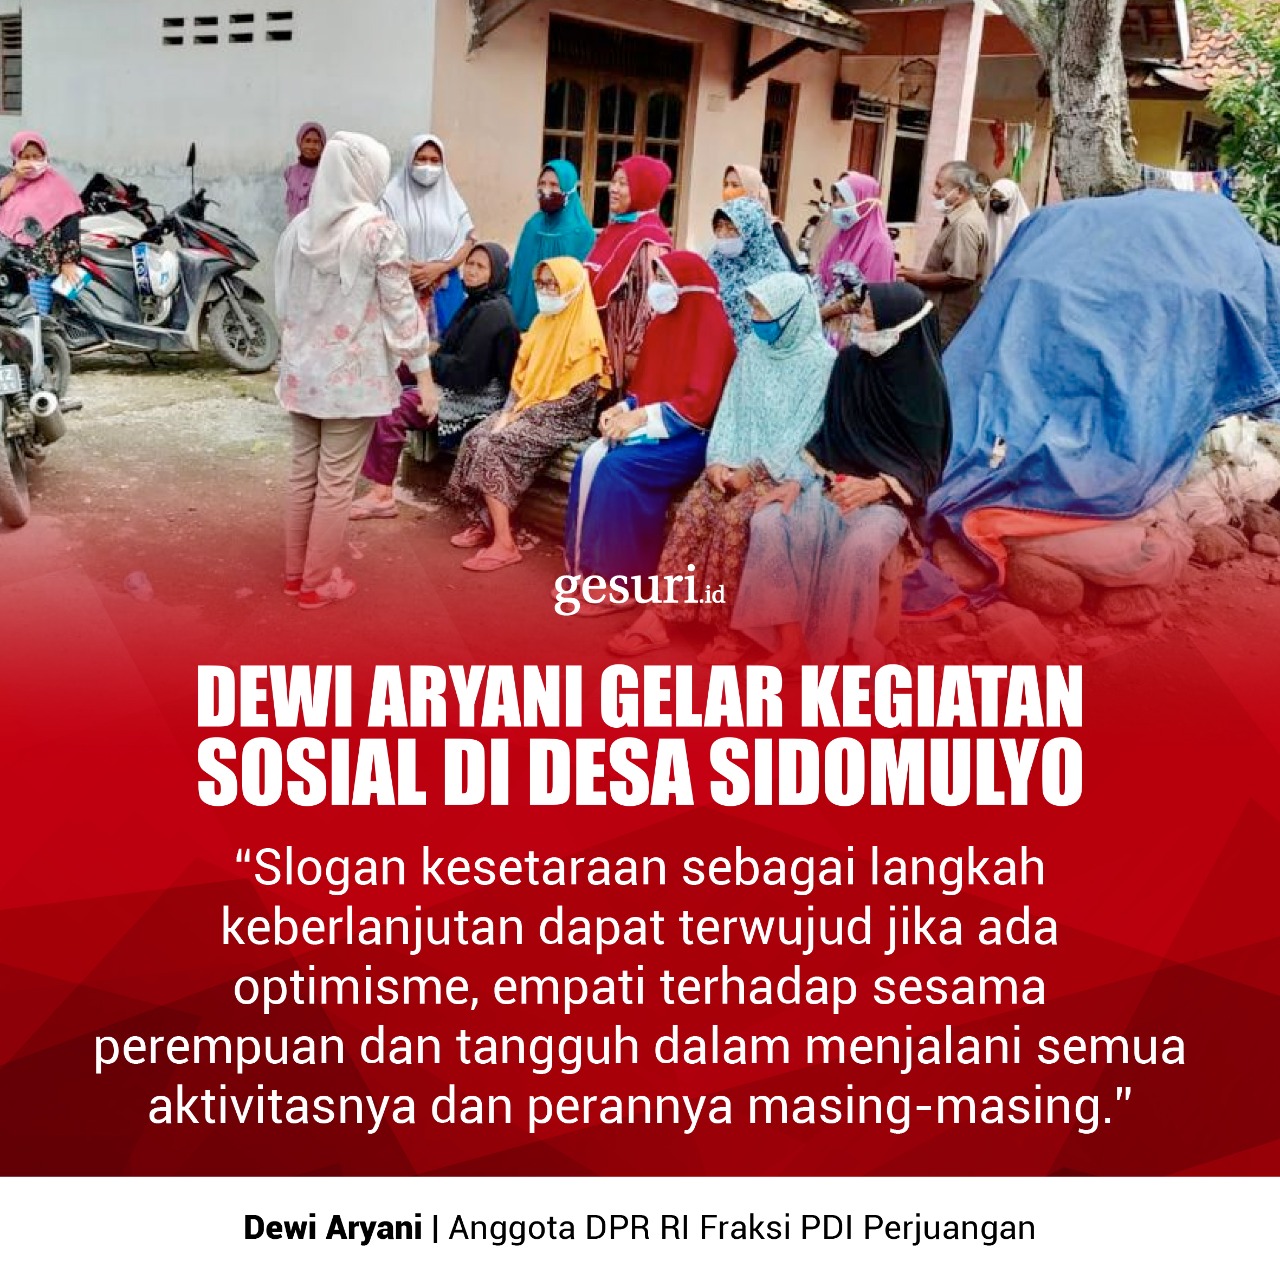 Dewi Aryani Gelar Kegiatan Sosial di Desa Sidomulyo (2/3)